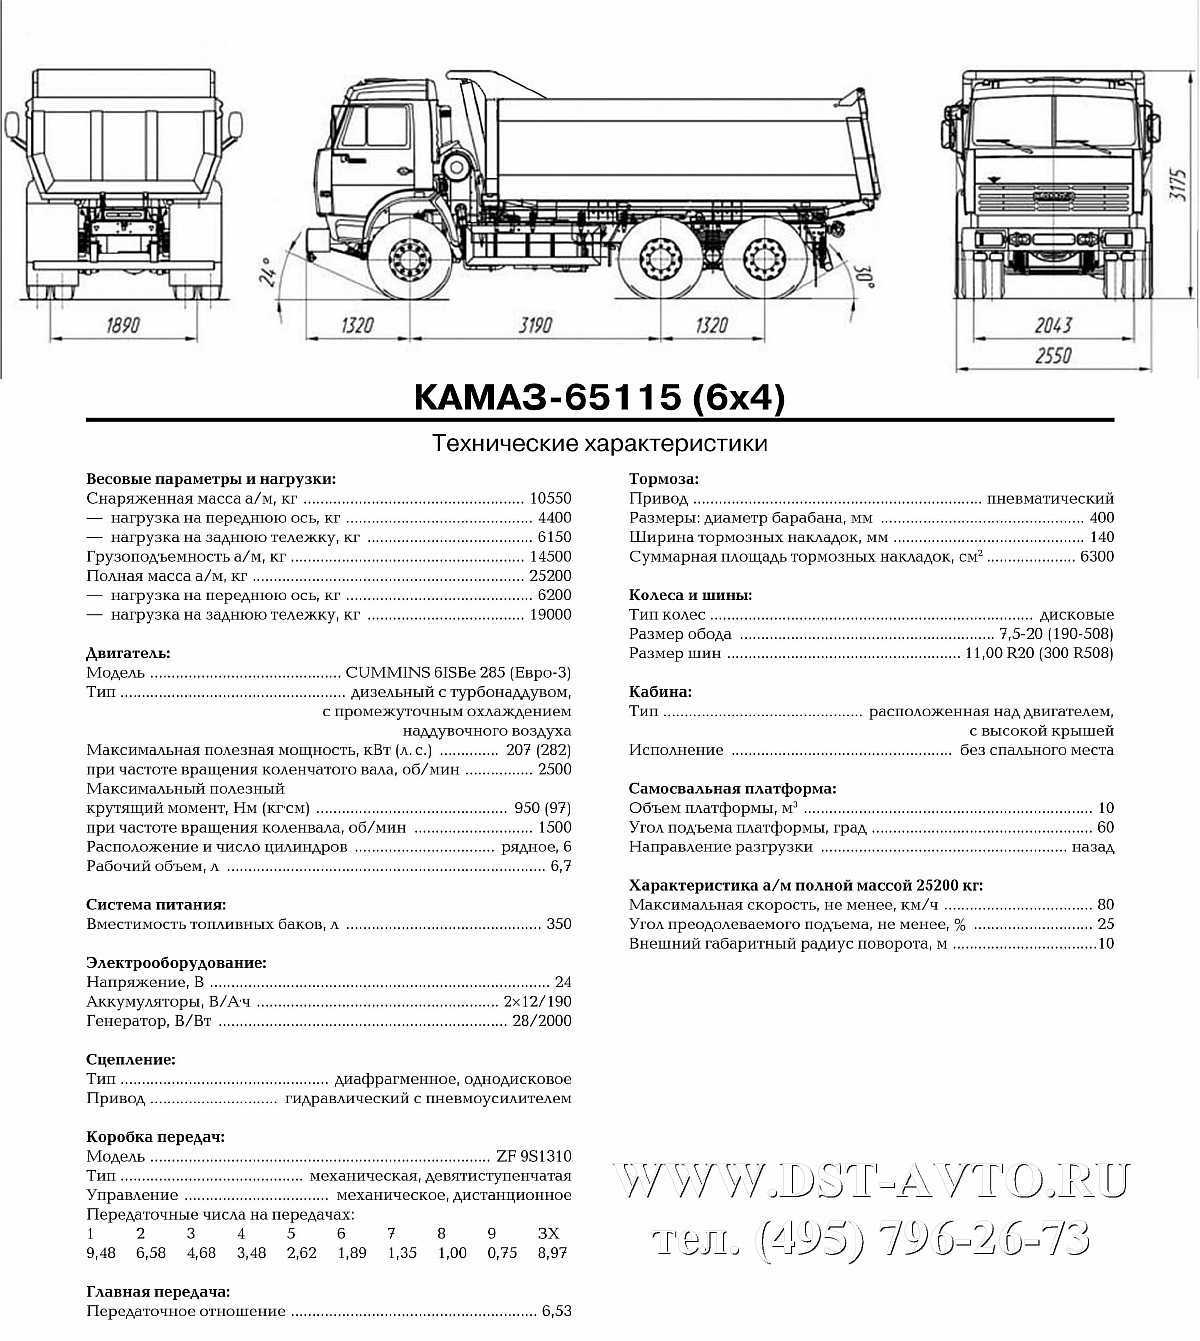 Камаз-53215 технические характеристики, двигатель, размеры, грузоподъемность, стоимость и видео